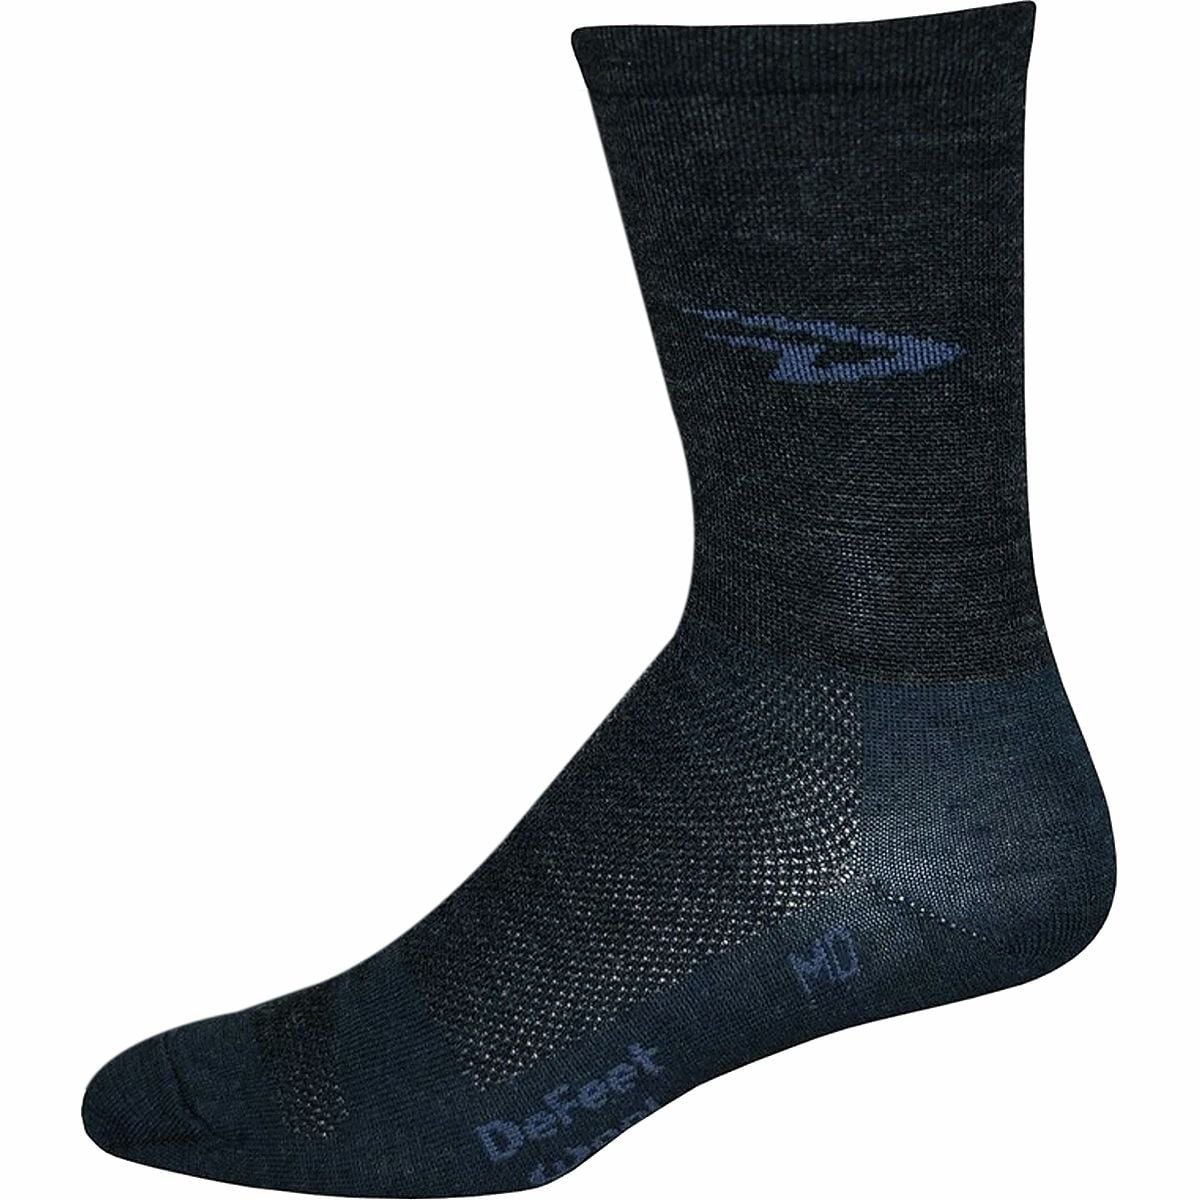 DeFeet Wooleator 5in Sock - Men's